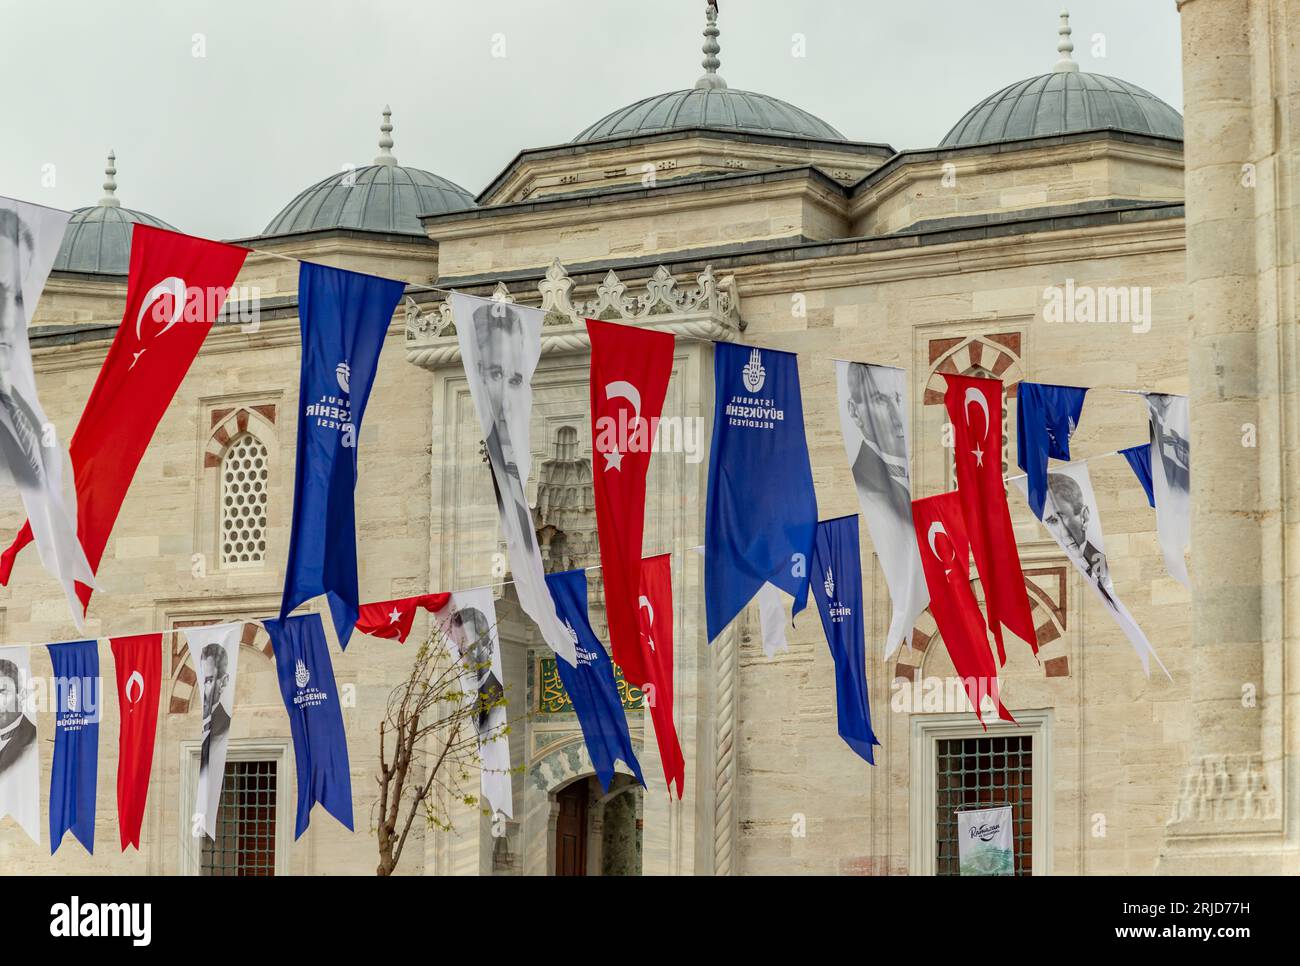 Une photo d'Istanbul, des bannières turques et Ataturk à côté d'une mosquée. Banque D'Images